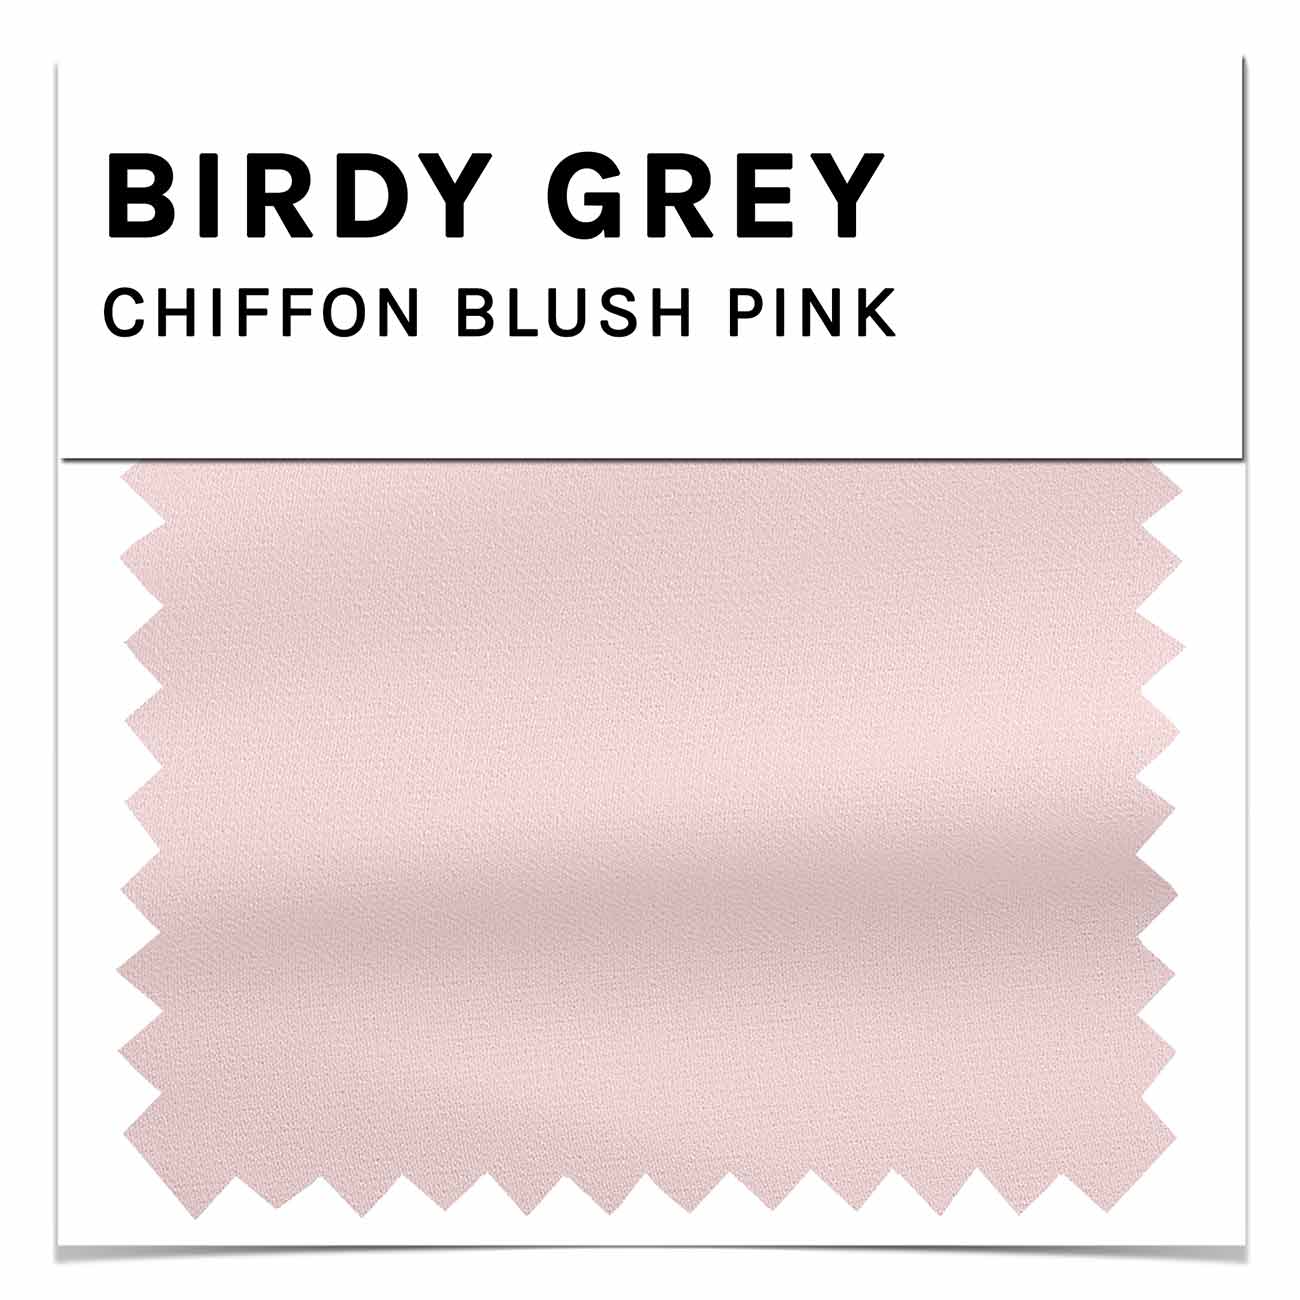 https://www.birdygrey.com/cdn/shop/files/blush_pink_chiffon_dress_swatch_3b8b7ce3-8ddd-40cf-b997-de1ff2ca4ffa.jpg?v=1683356832